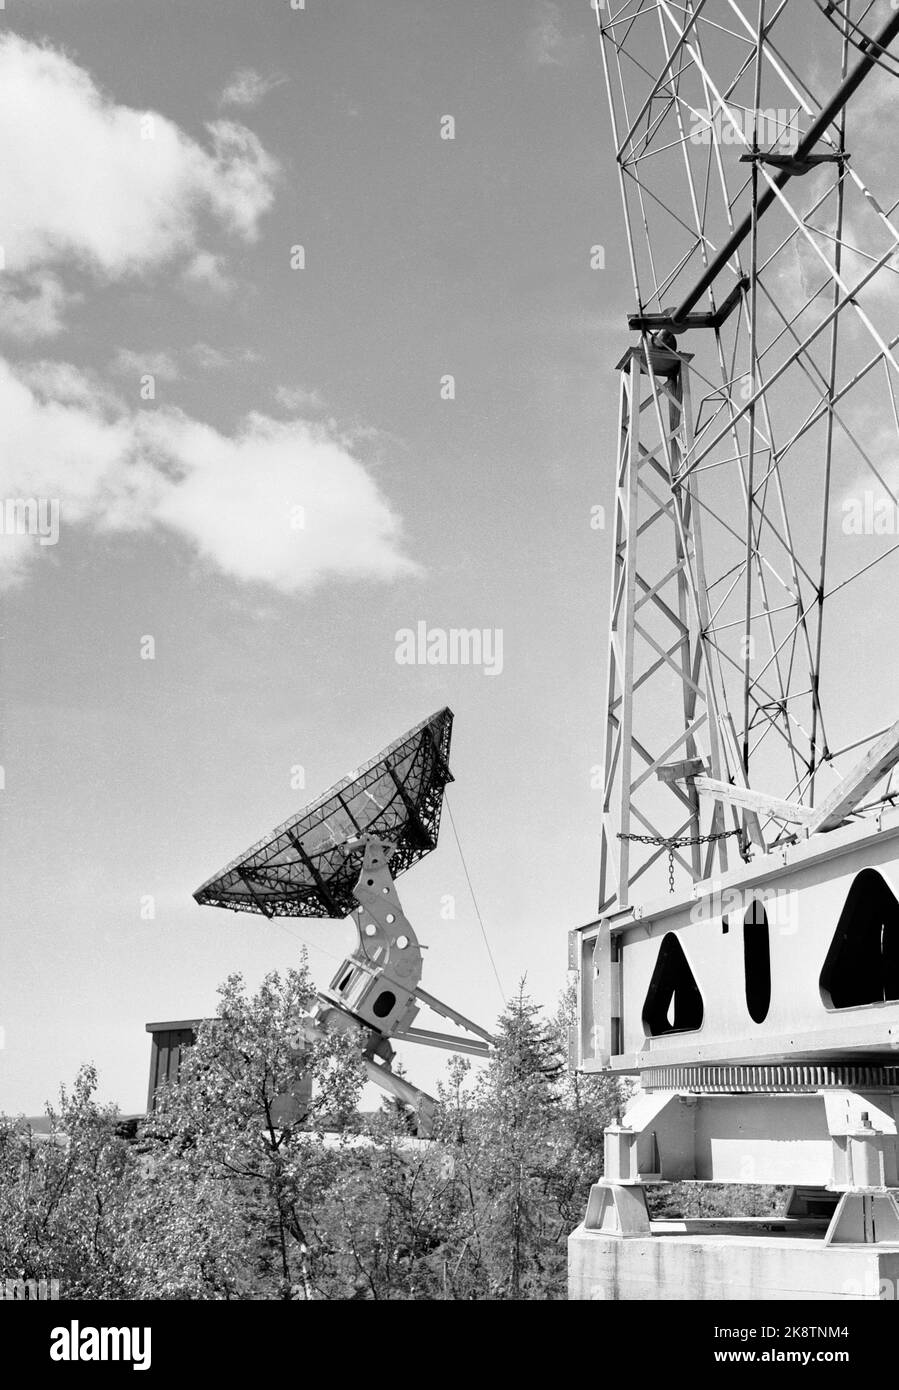 Harestua 19540531 das Sonnenobservatorium in Harestua wird in Betrieb genommen. Hier einige der Antennen, unter anderem. a. Eine Matratzenantenne (Th) und ein Parabolreflektor. Foto: NTB / NTB Stockfoto